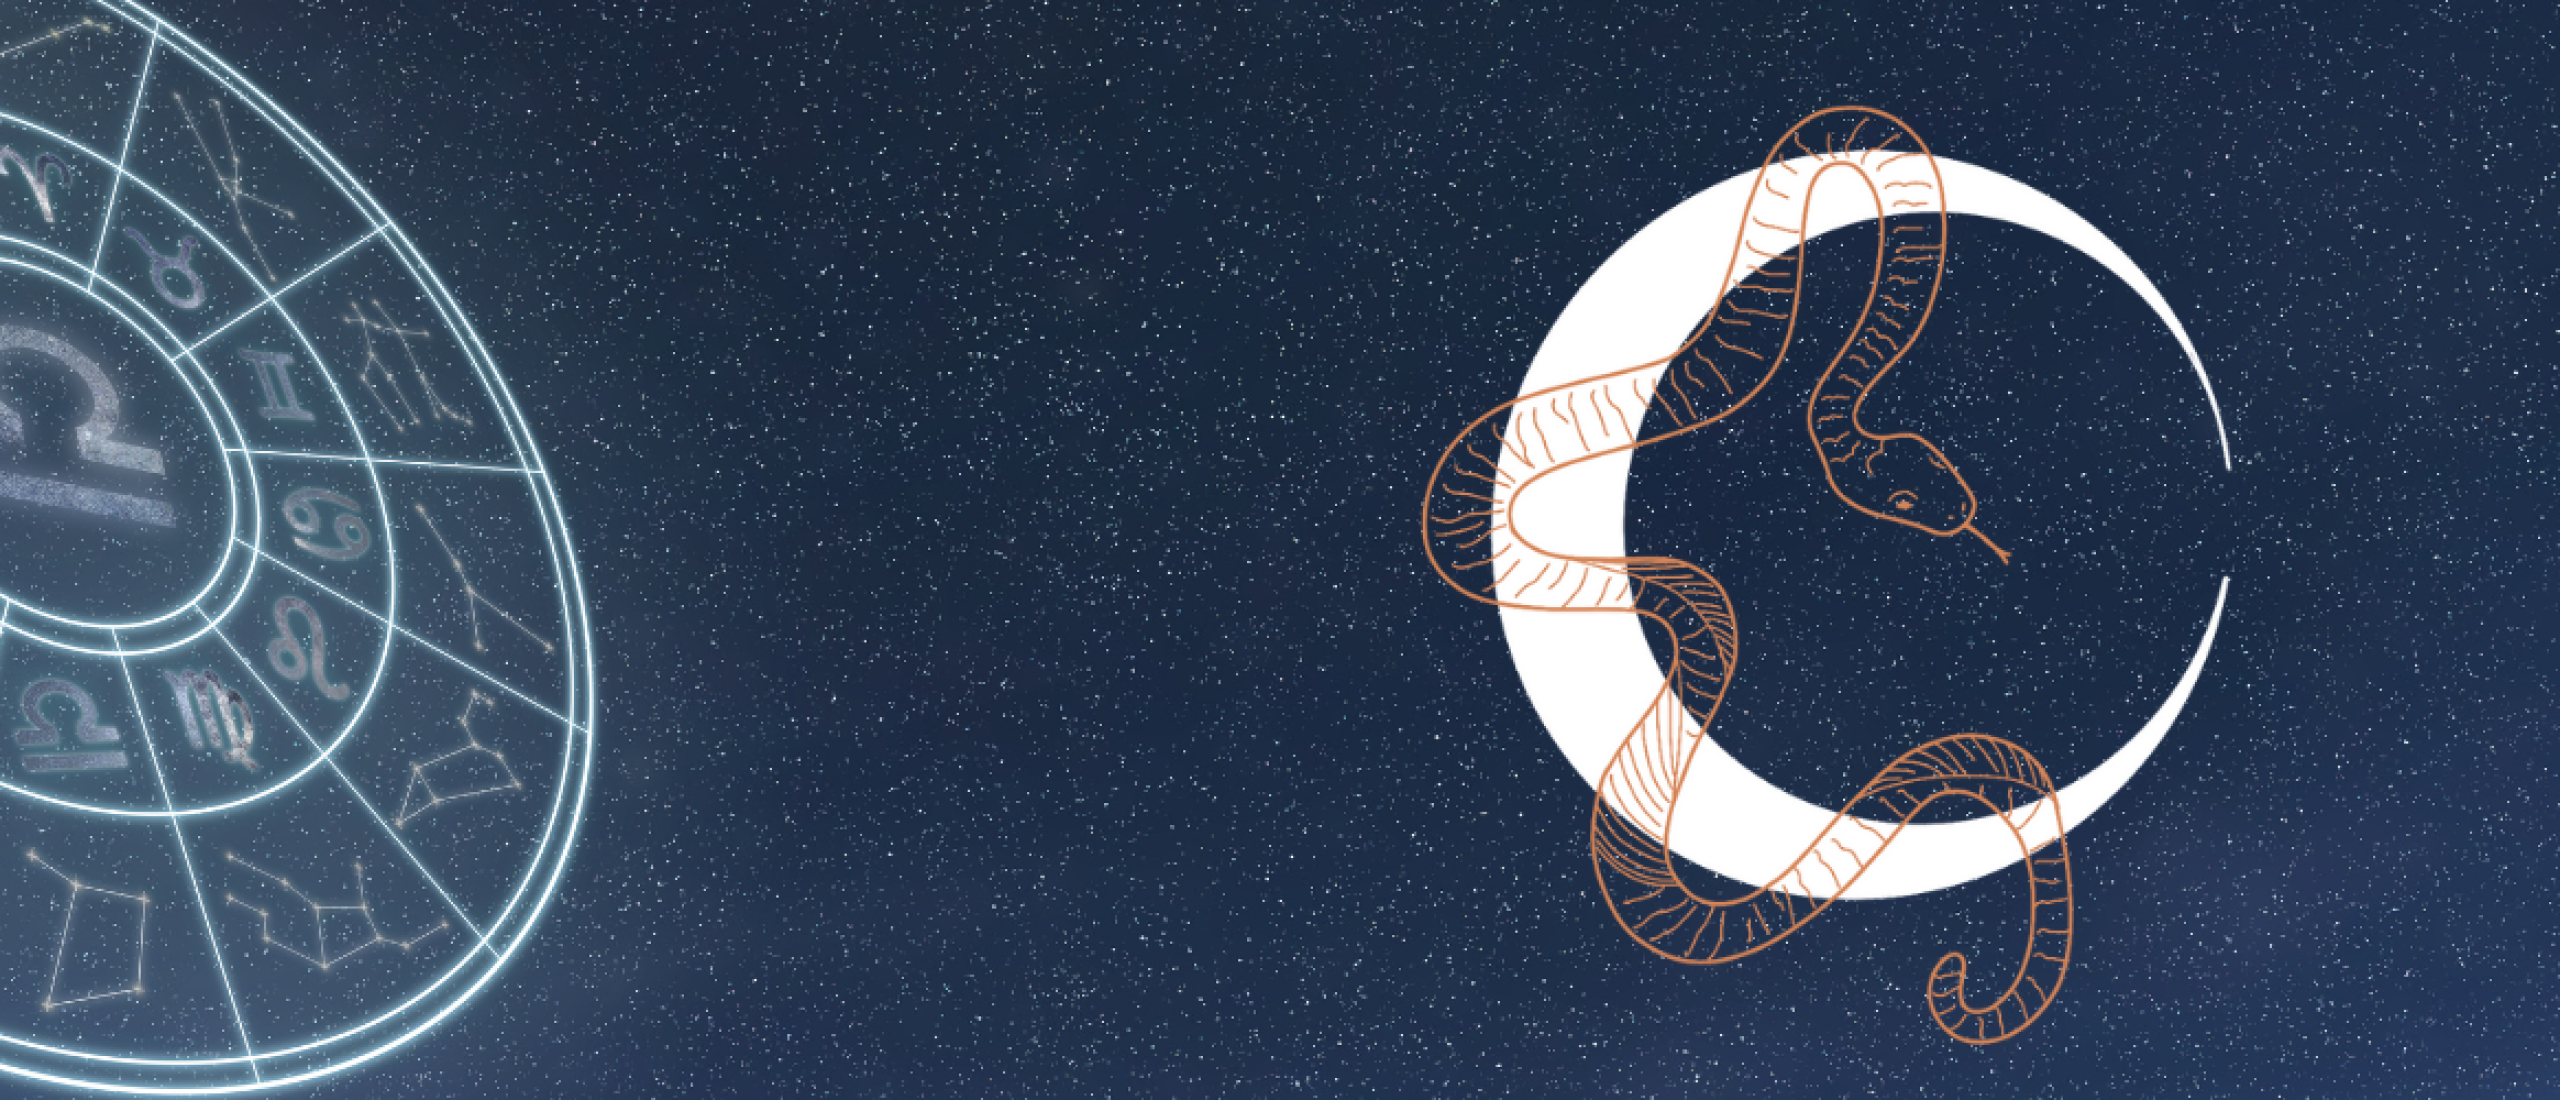 13e sterrenbeeld: De Slangendrager (Ophiuchus)